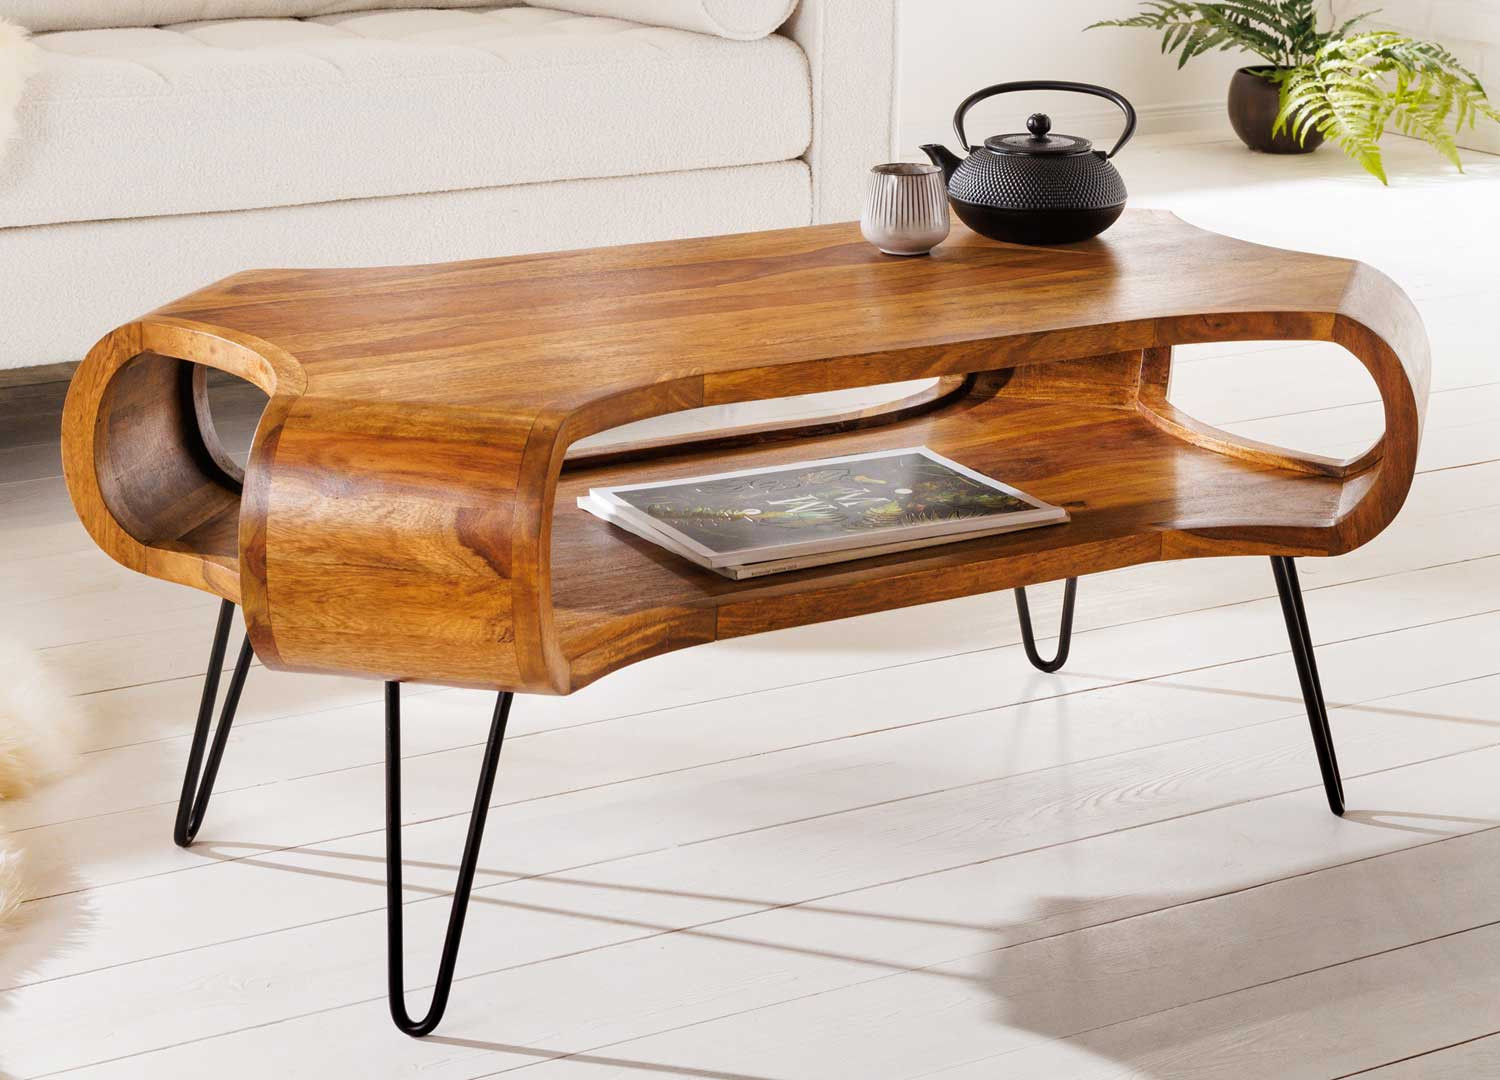 Petite table basse pieds en épingle et bois massif pour salon